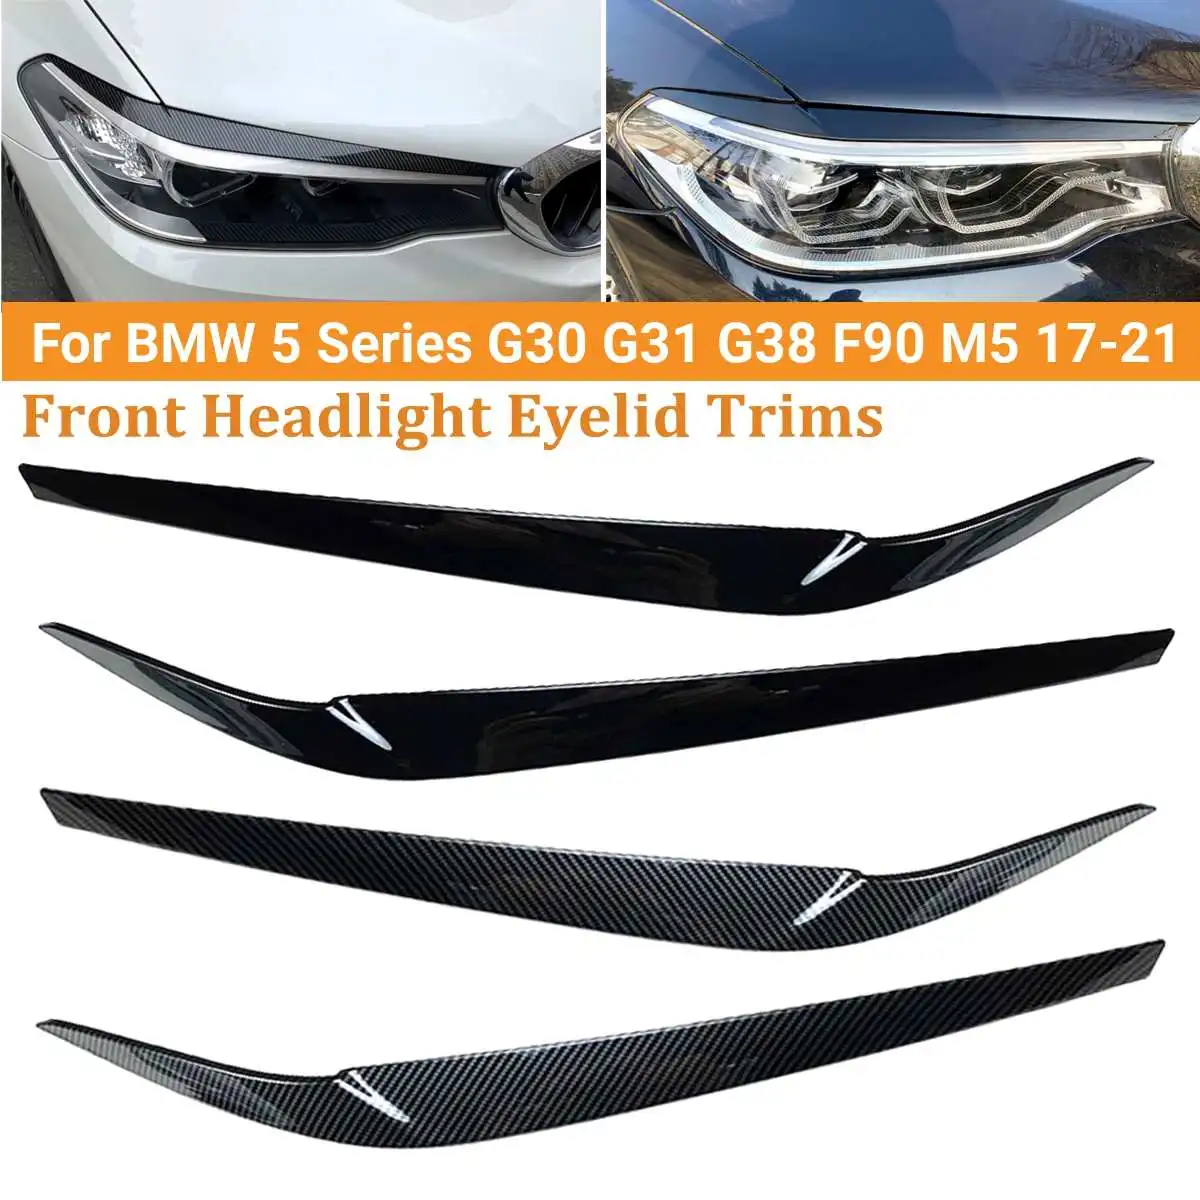 

2pcs Car Carbon Fiber Headlights Eyebrow Eyelid Trim Cover Sticker For BMW 5 Series G30 G31 G38 F90 M5 525I 530I 540I 2017-2021